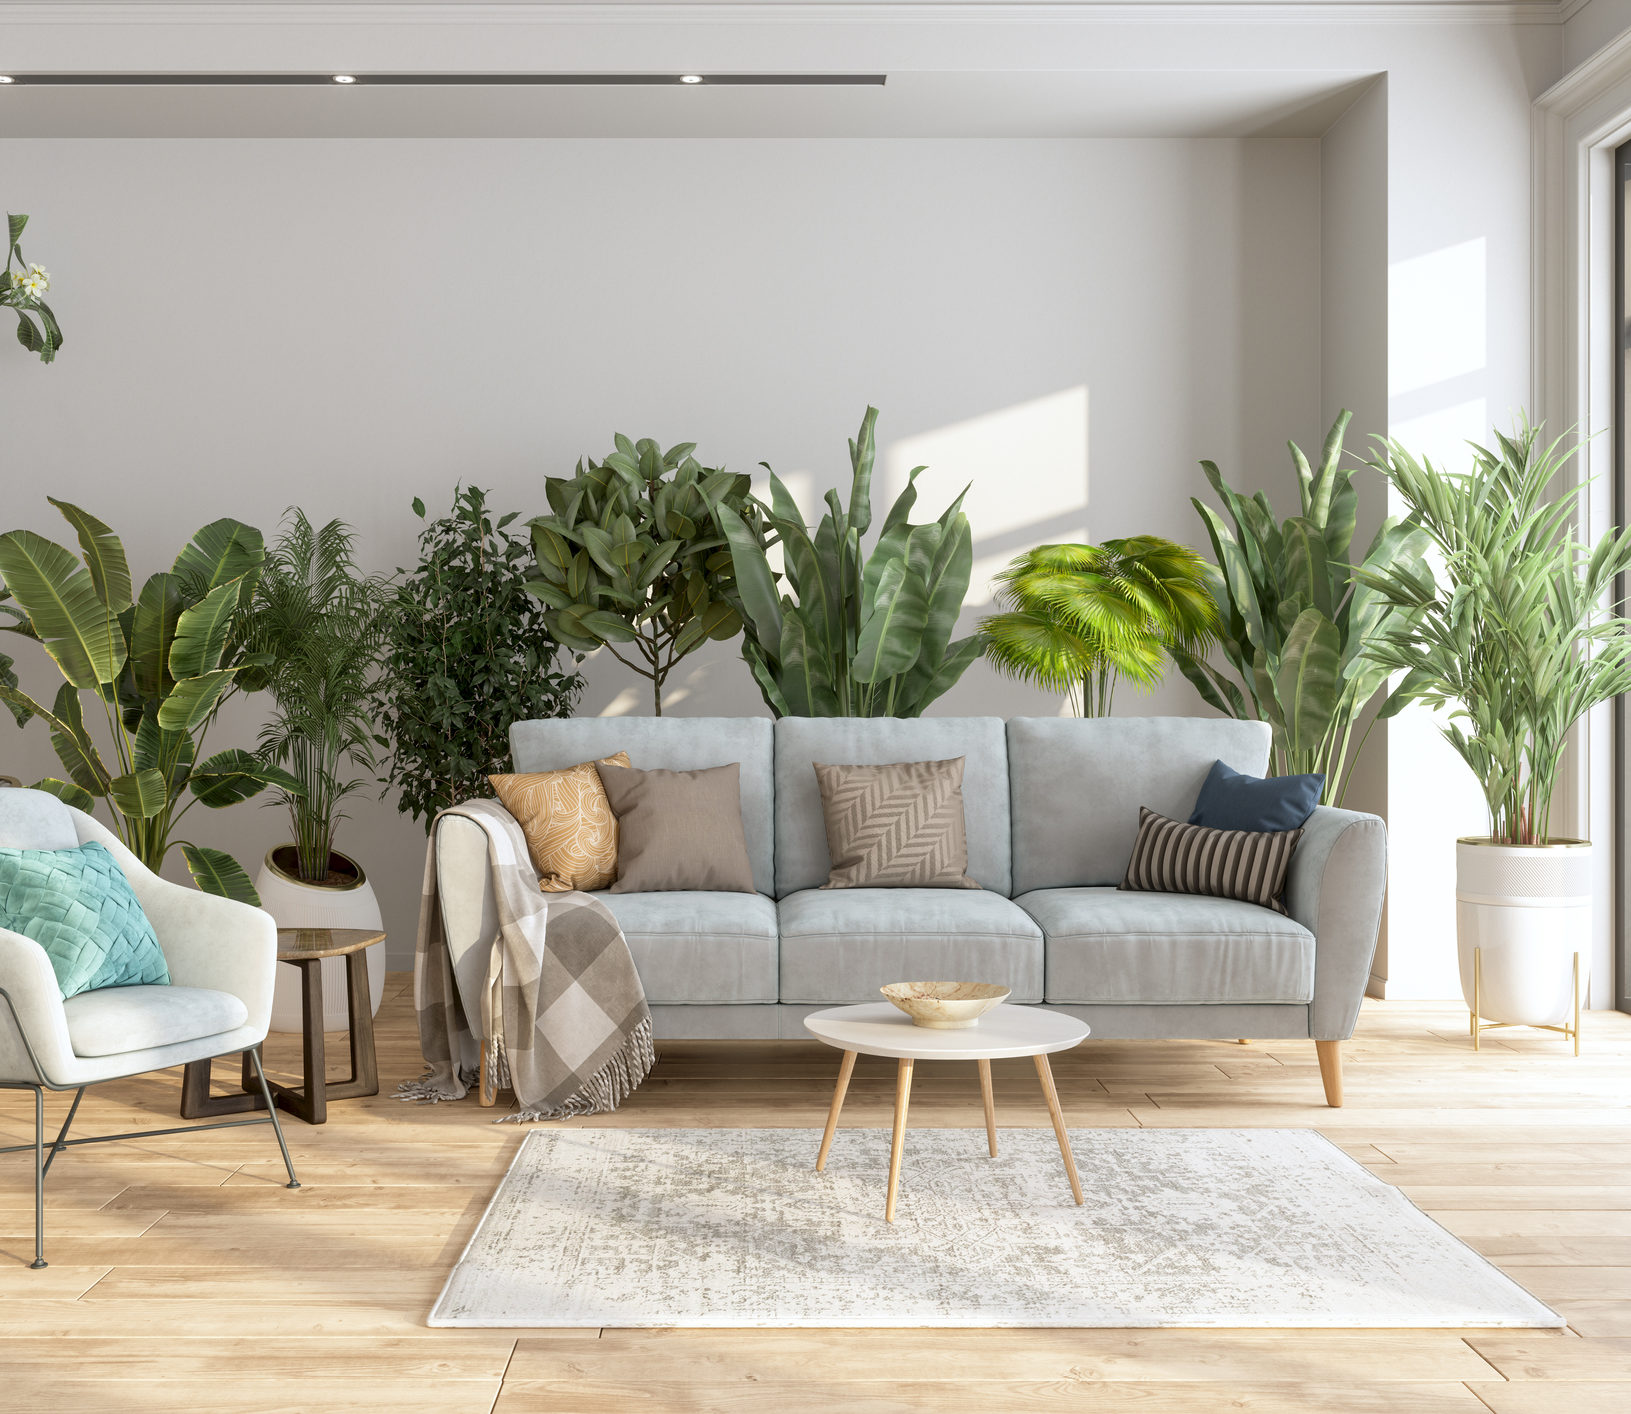 Você também pode fazer uma parede cheia de plantas na sua sala de estar.